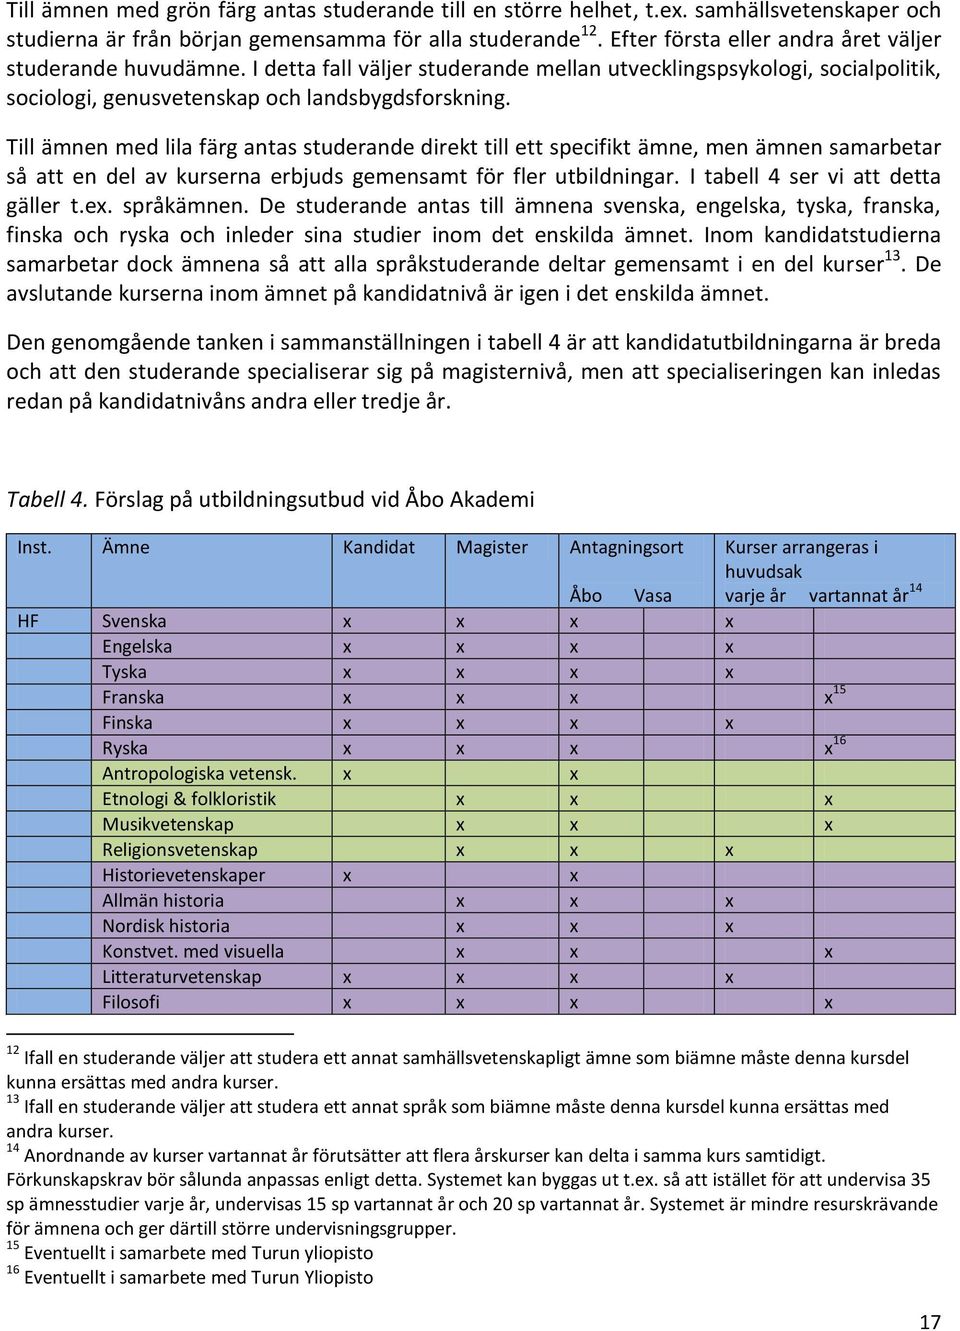 Till ämnen med lila färg antas studerande direkt till ett specifikt ämne, men ämnen samarbetar så att en del av kurserna erbjuds gemensamt för fler utbildningar. I tabell 4 ser vi att detta gäller t.